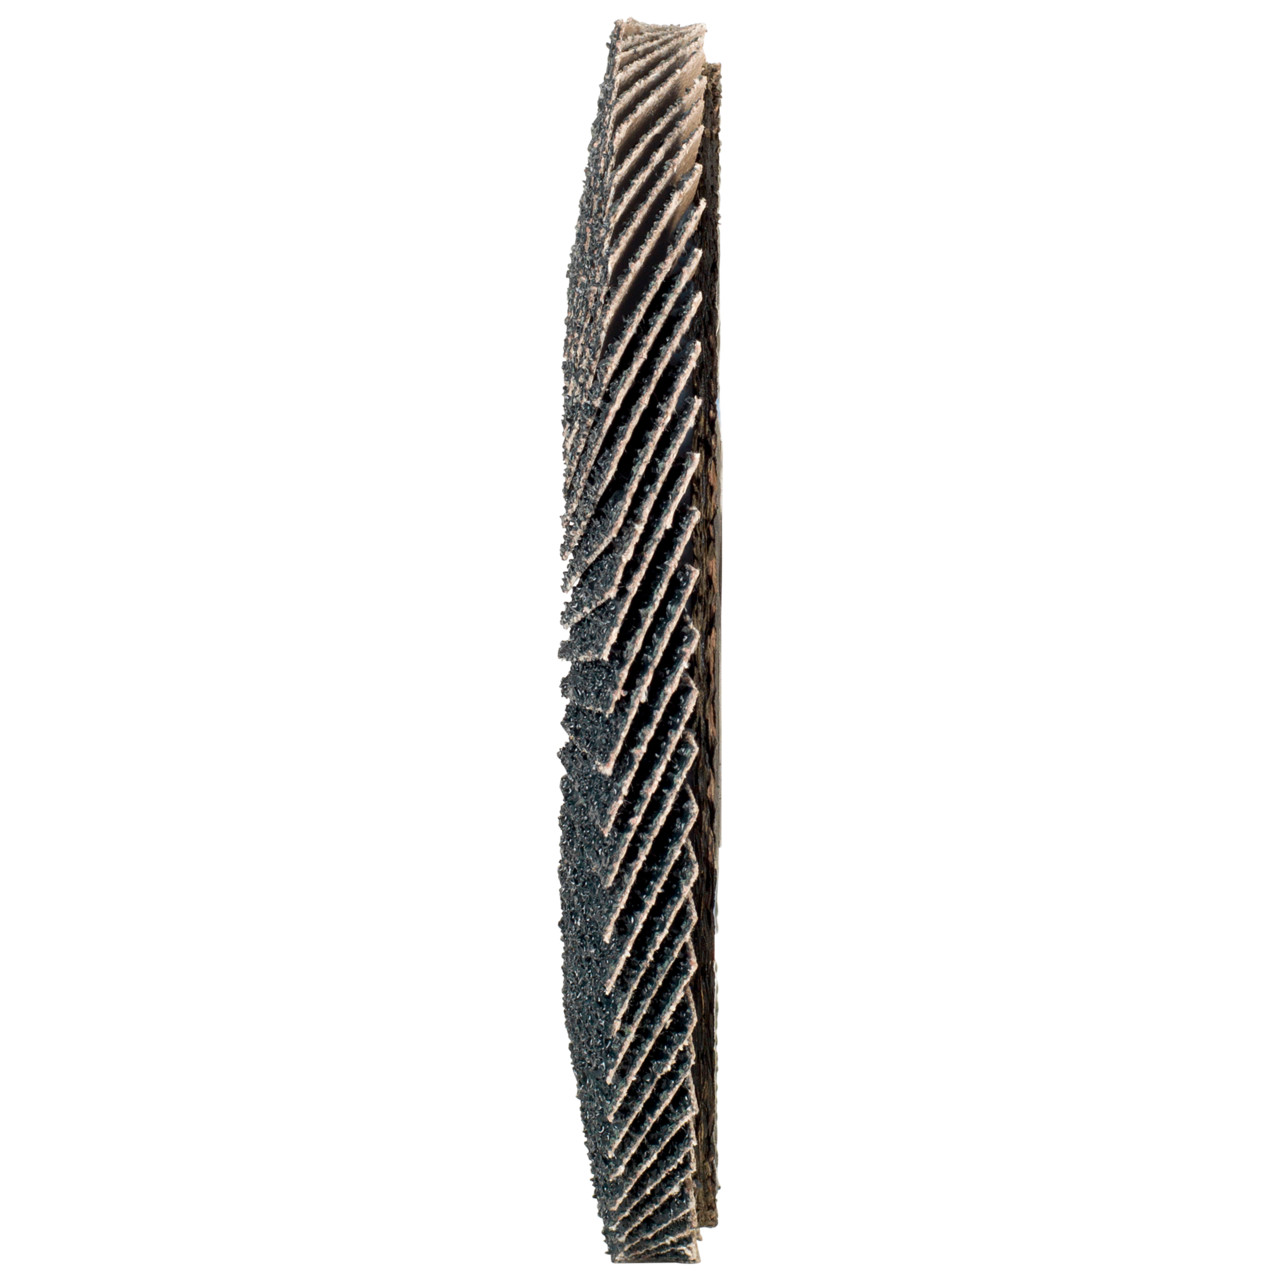 TYROLIT Fächerscheibe DxH 125x22,2 2in1 für Stahl & Edelstahl, P60, Form: 28A - gerade Ausführung (Glasfaserträgerkörperausführung), Art. 668693